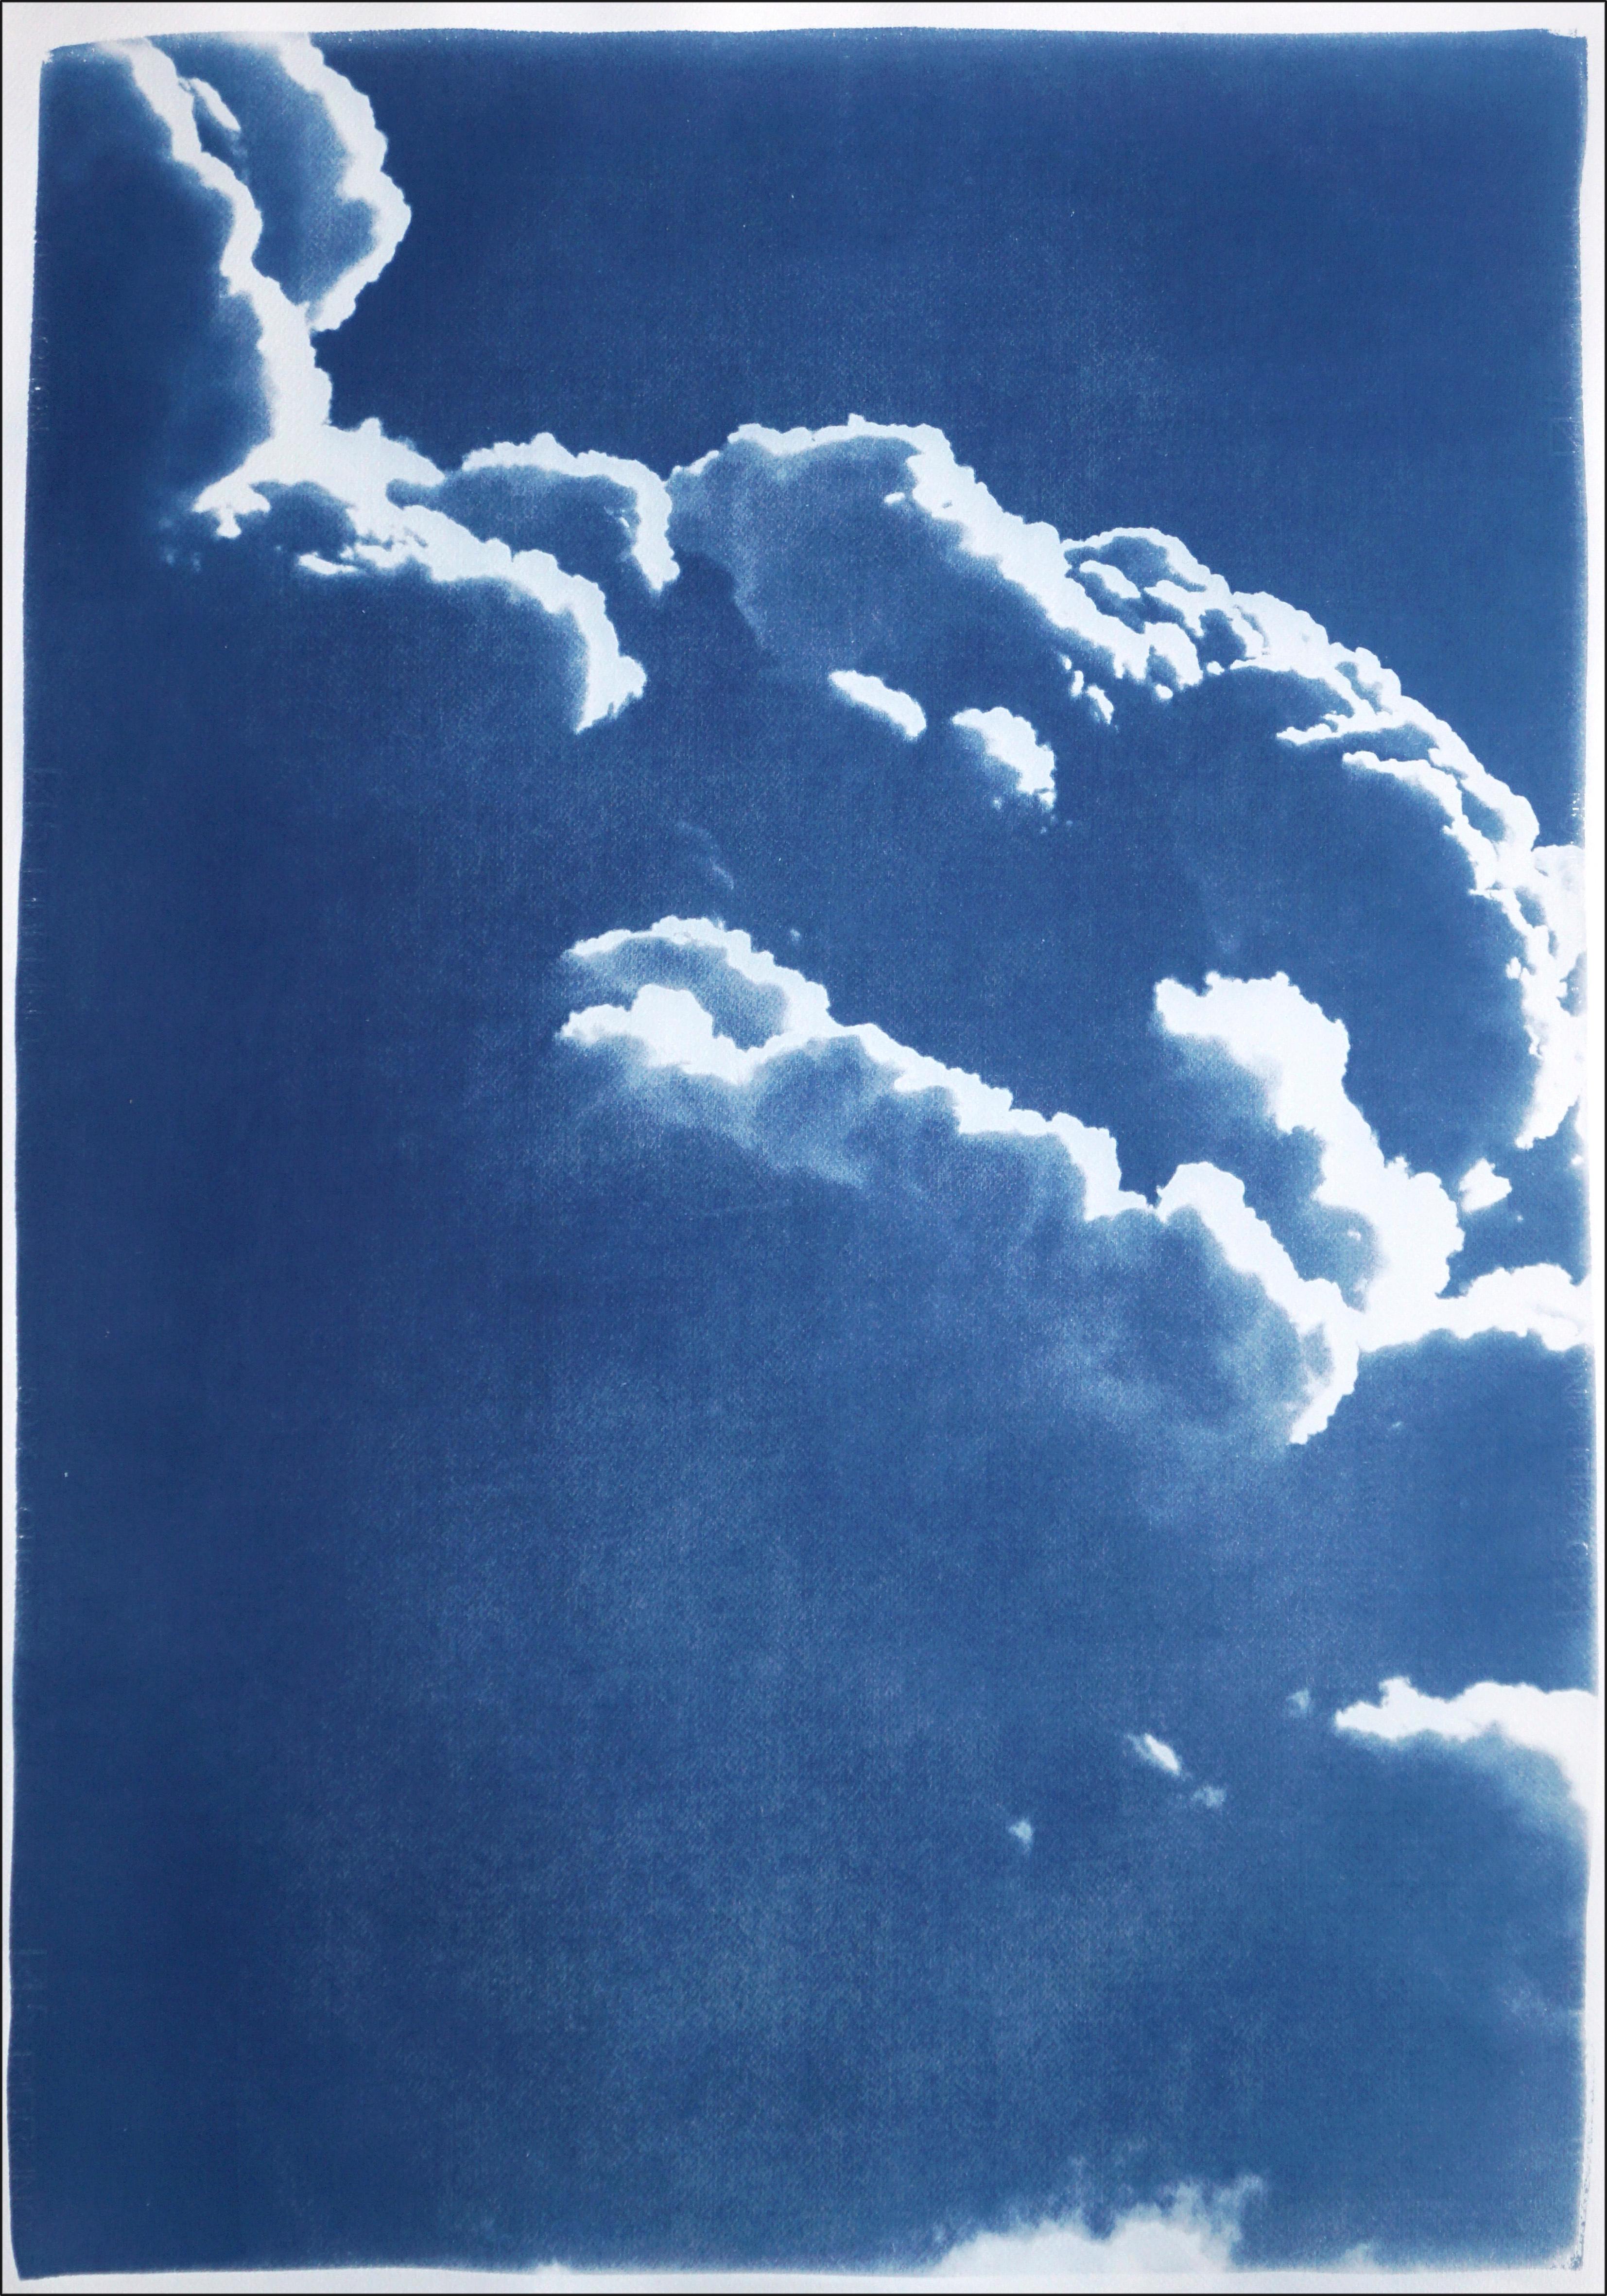 Diptychon aus schwebenden Wolken, blaue Töne Himmelssszene, Zyanotyp-Druck in seidenformen (Blau), Color Photograph, von Kind of Cyan